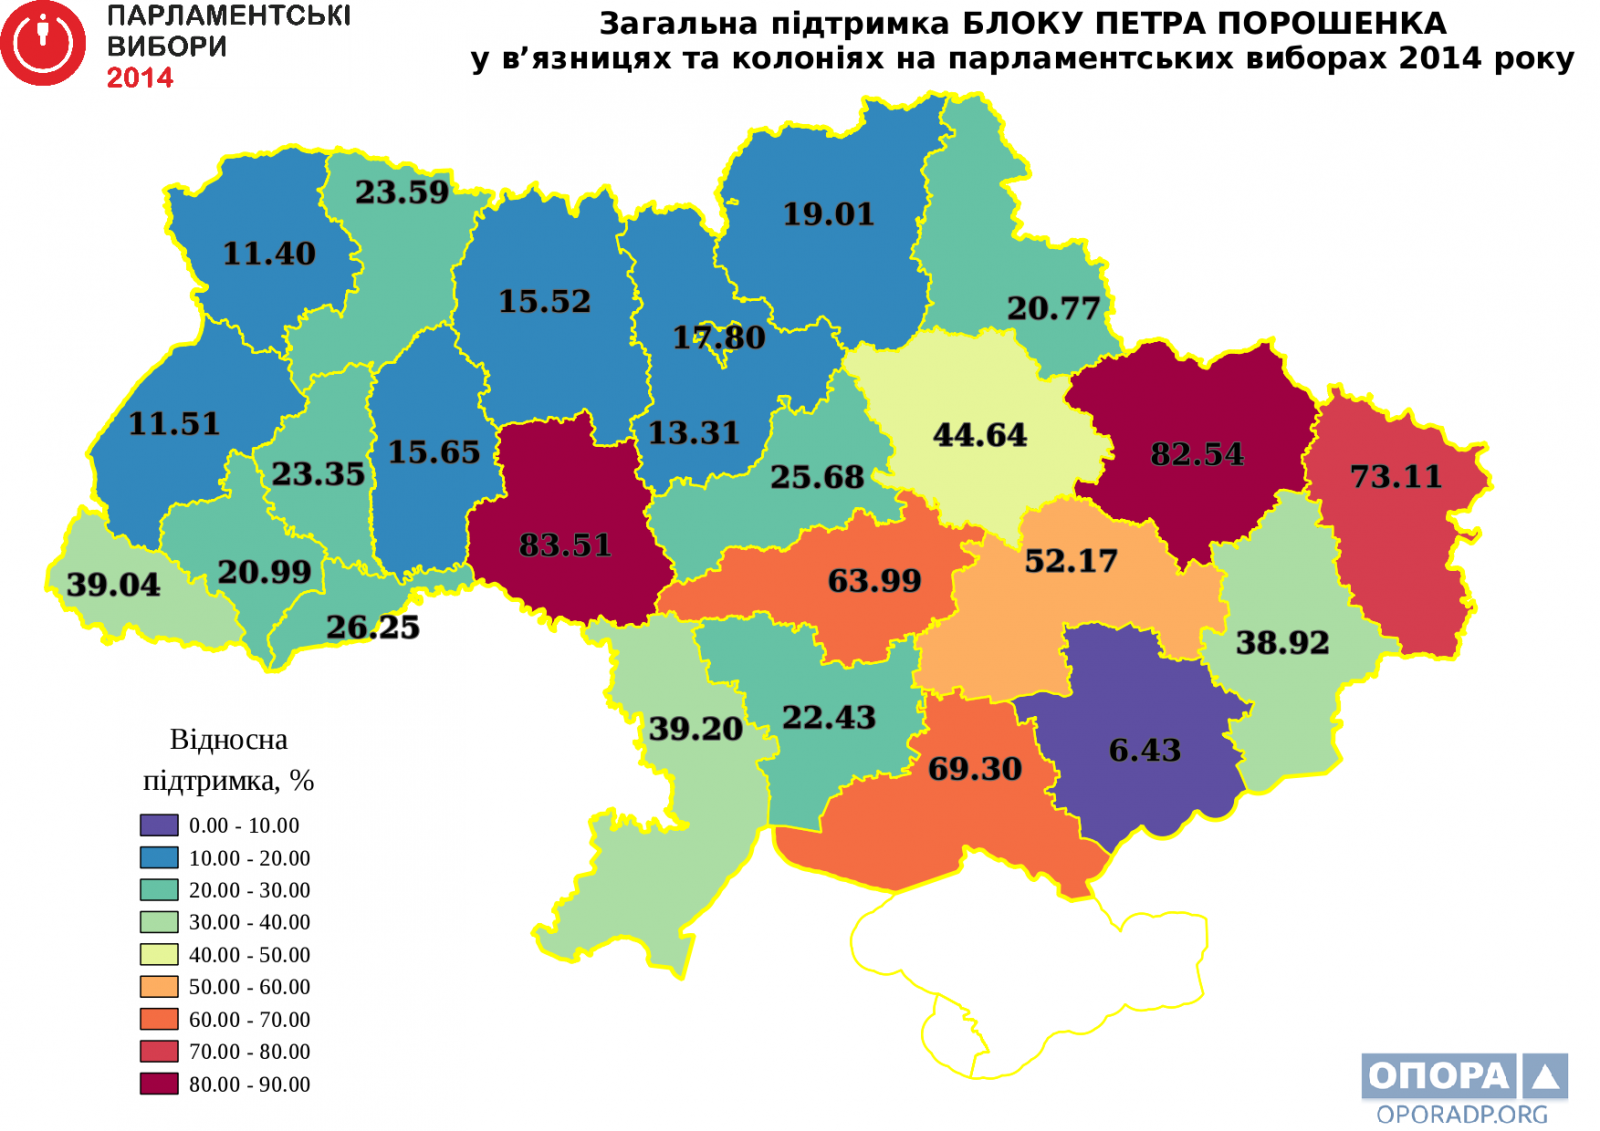 Картограма загальної підтримки БЛОКУ ПЕТРА ПОРОШЕНКА у пенітенціарних закладах областей України